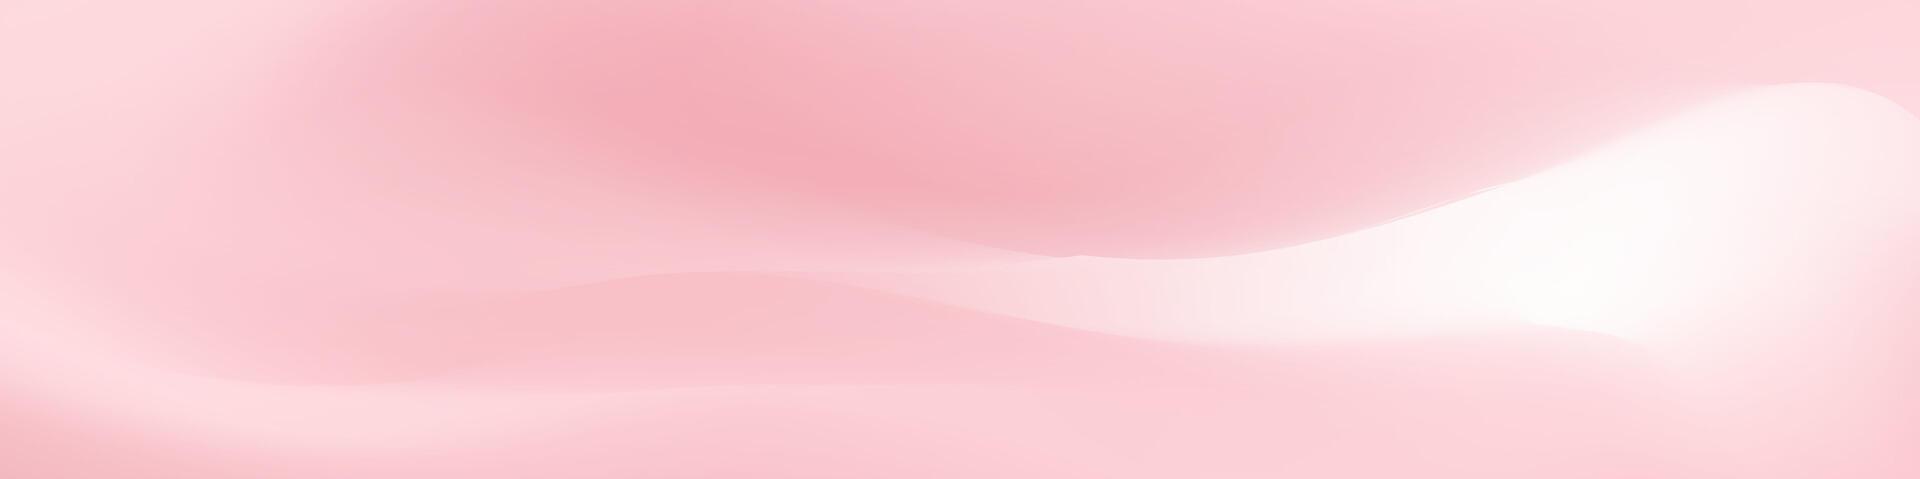 abstrato fundo Rosa branco cor com borrado imagem é uma visualmente atraente Projeto de ativos para usar dentro anúncios, sites, ou social meios de comunicação Postagens para adicionar uma moderno toque para a visuais. vetor